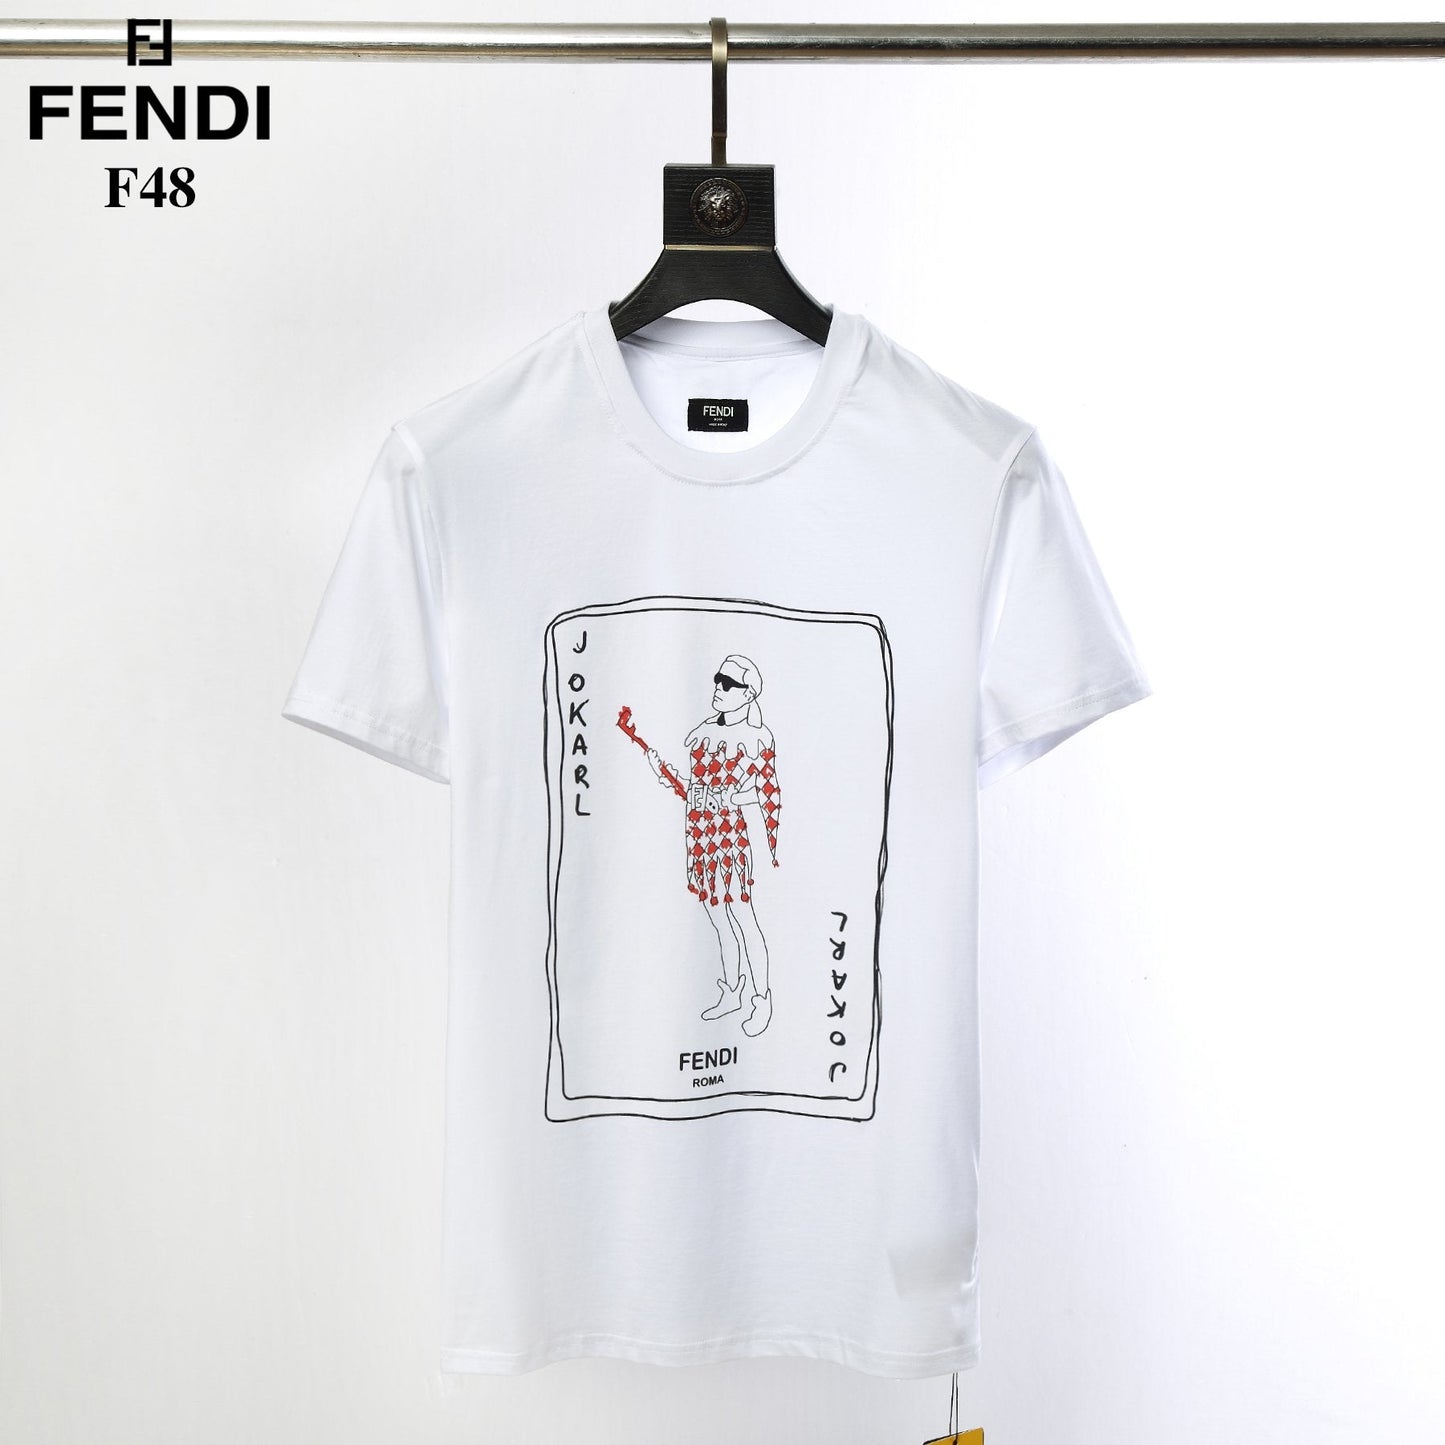 Fen T Shirt Top 2 Colors A